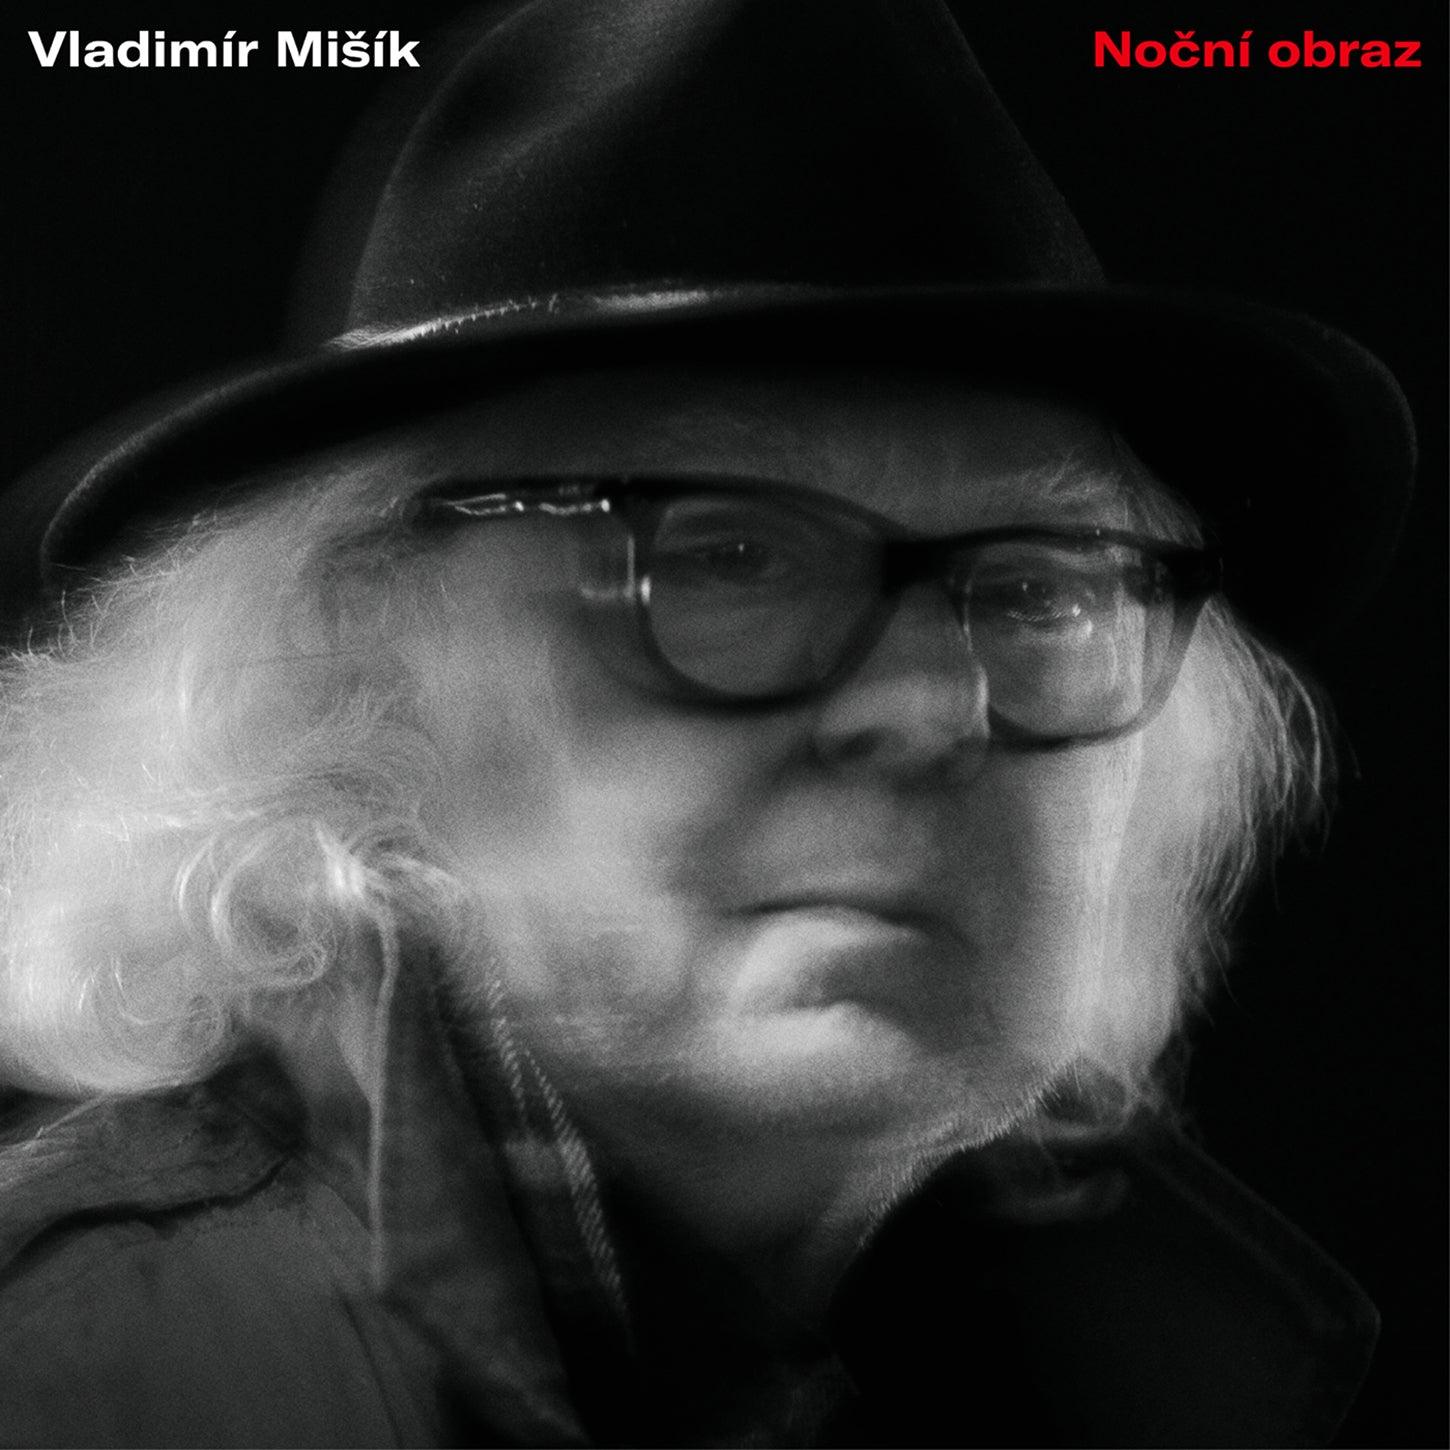 Vladimír Mišík: Nocní Obraz (Night Image) - ArkivMusic